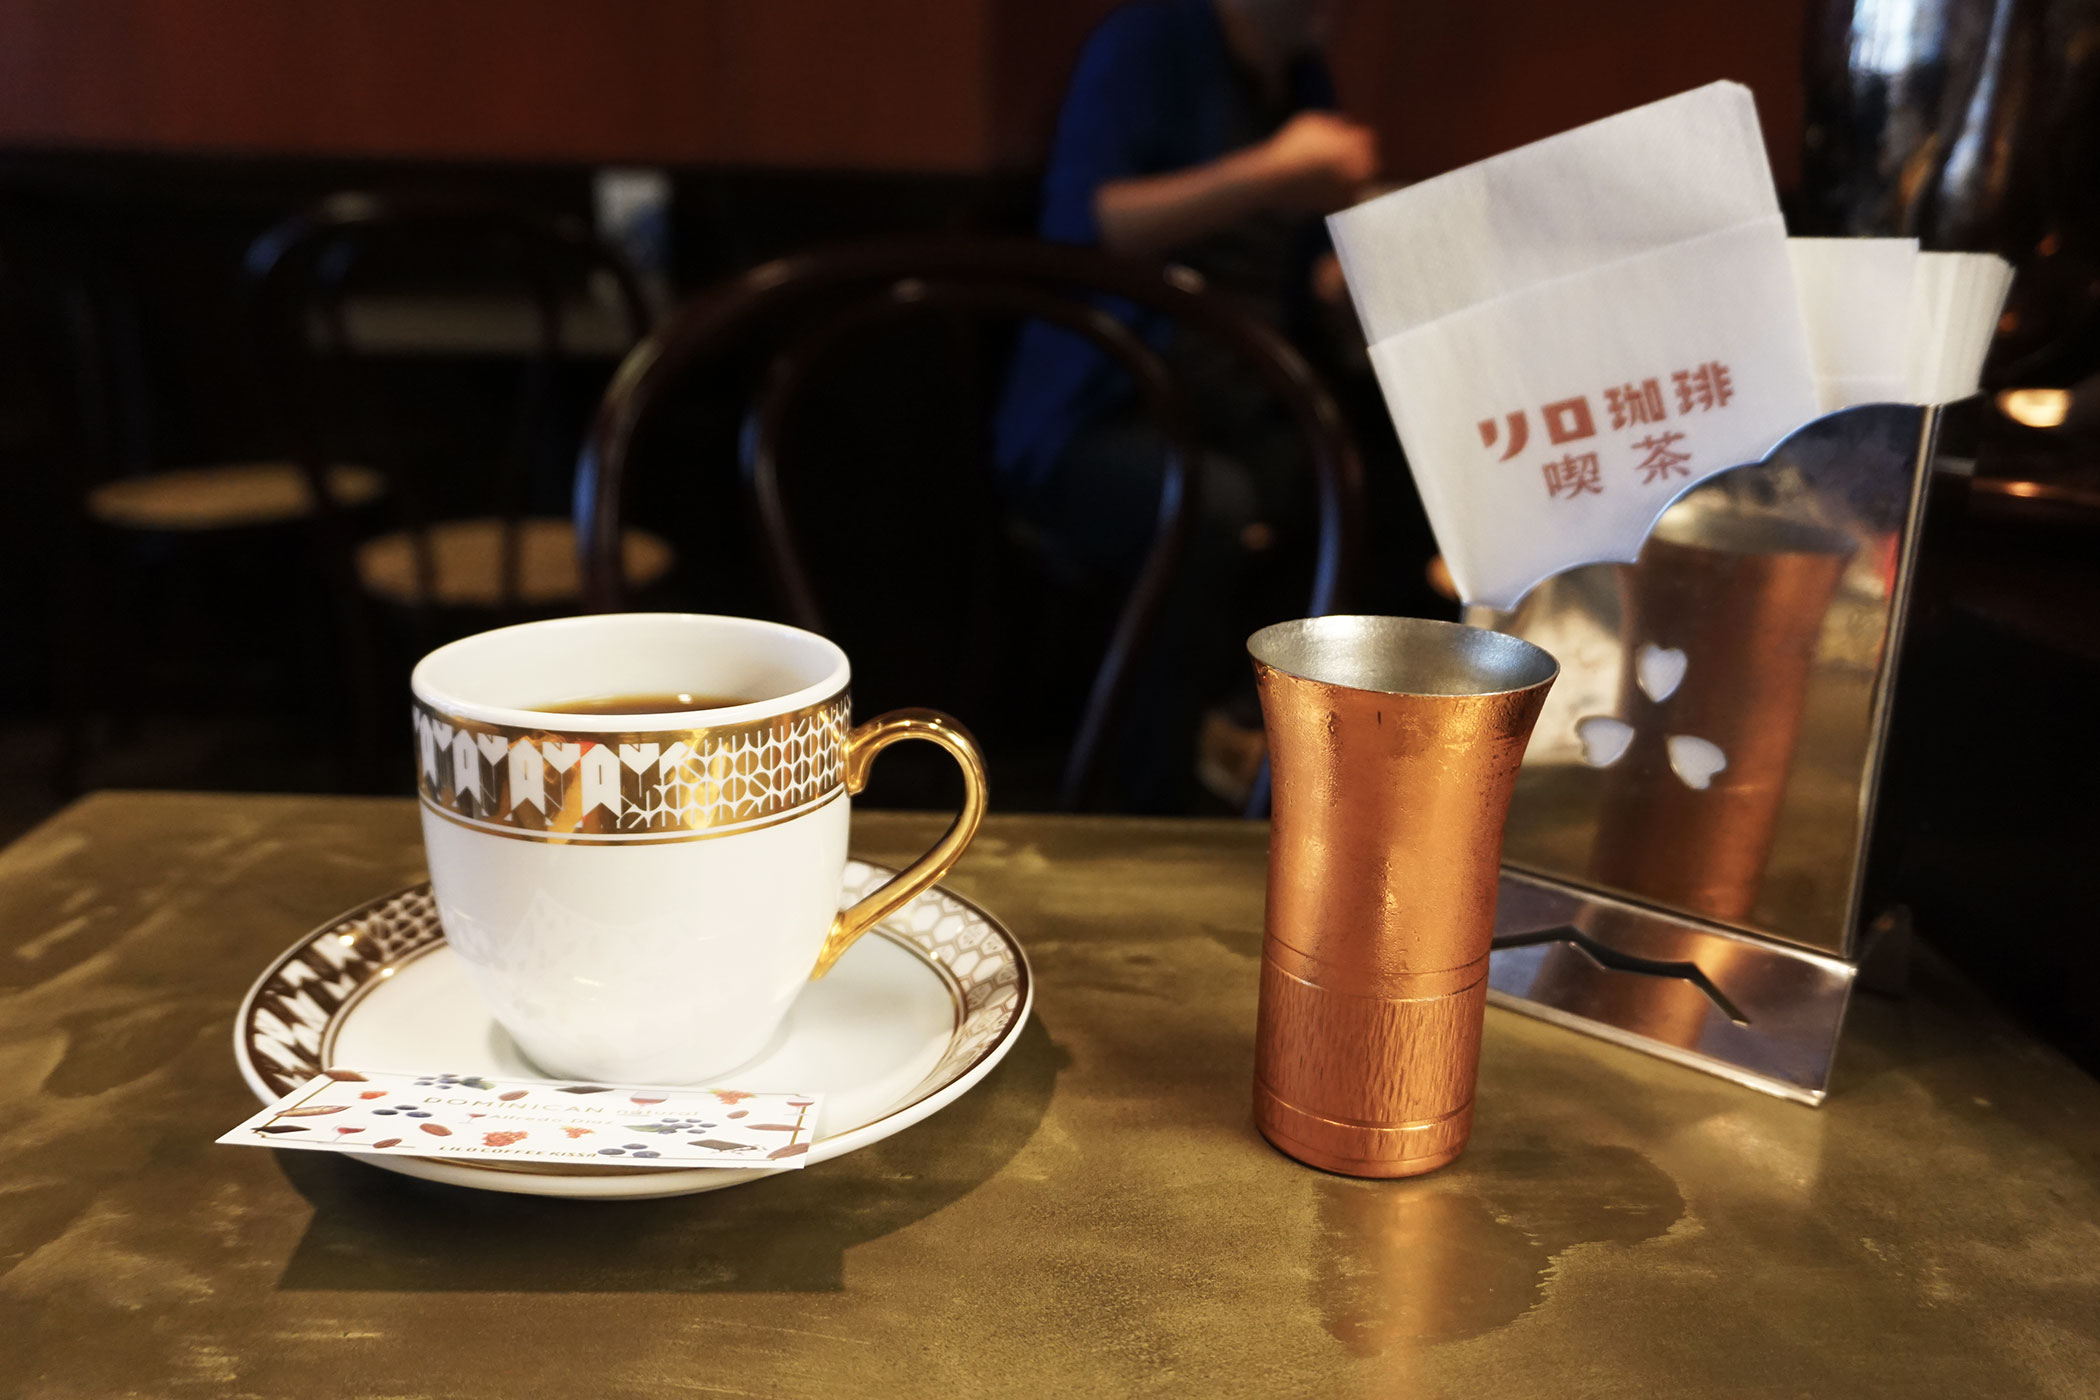 リロ珈琲喫茶 純喫茶の空気を感じるリロコーヒー流の喫茶店